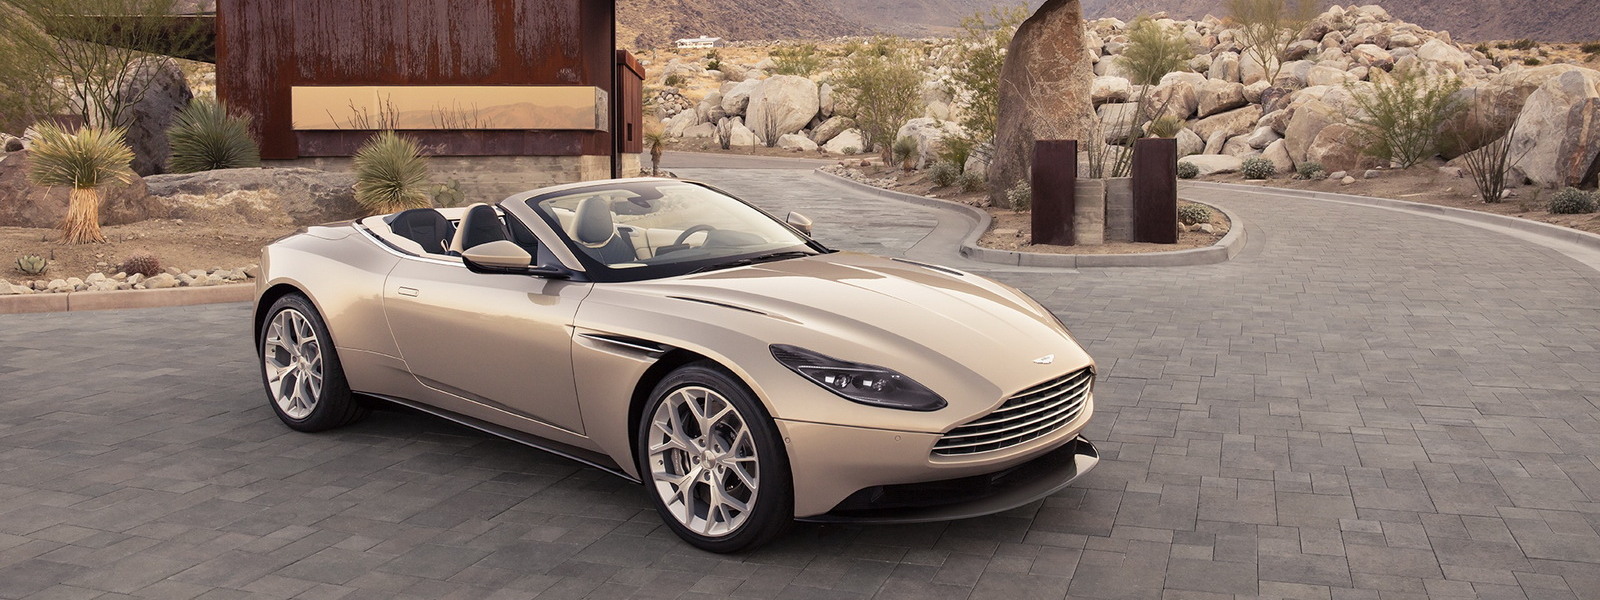 Aston Martin ra mắt xe thể thao mui trần DB11 Volante, động cơ V8 4.0 503 mã lực, giá từ 211.000 USD